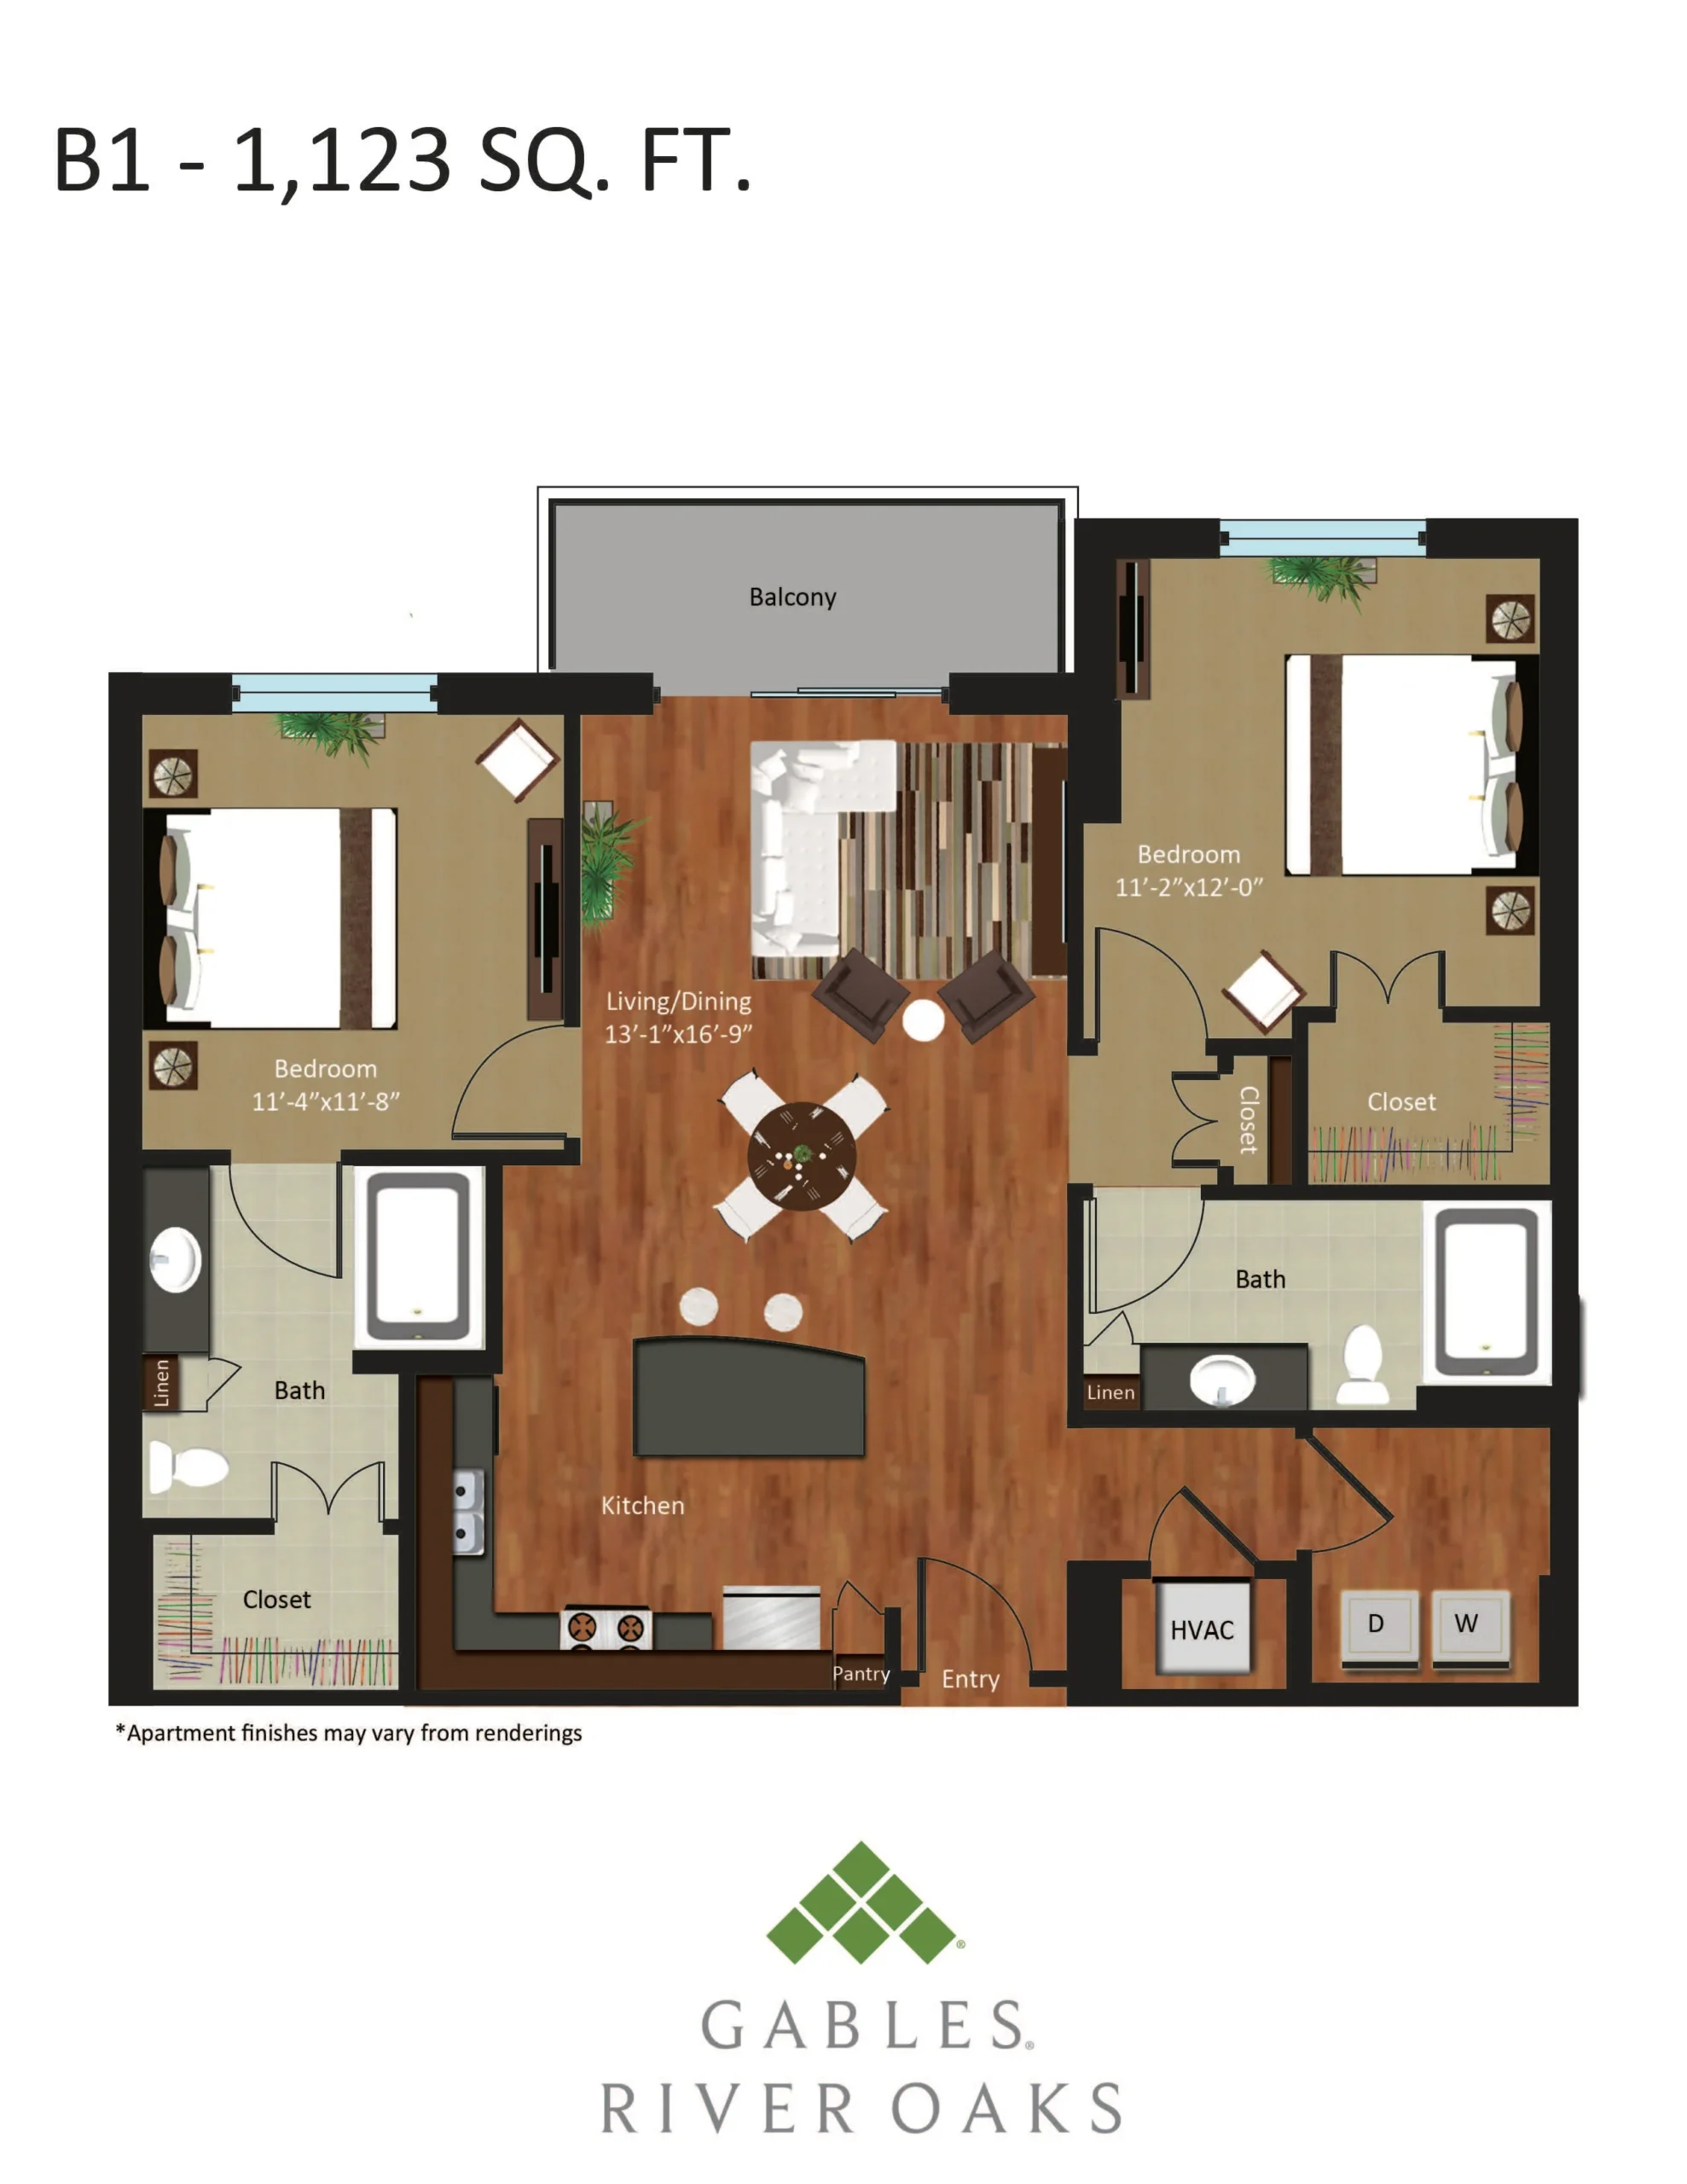 Gables River Oaks Floor Plan 26